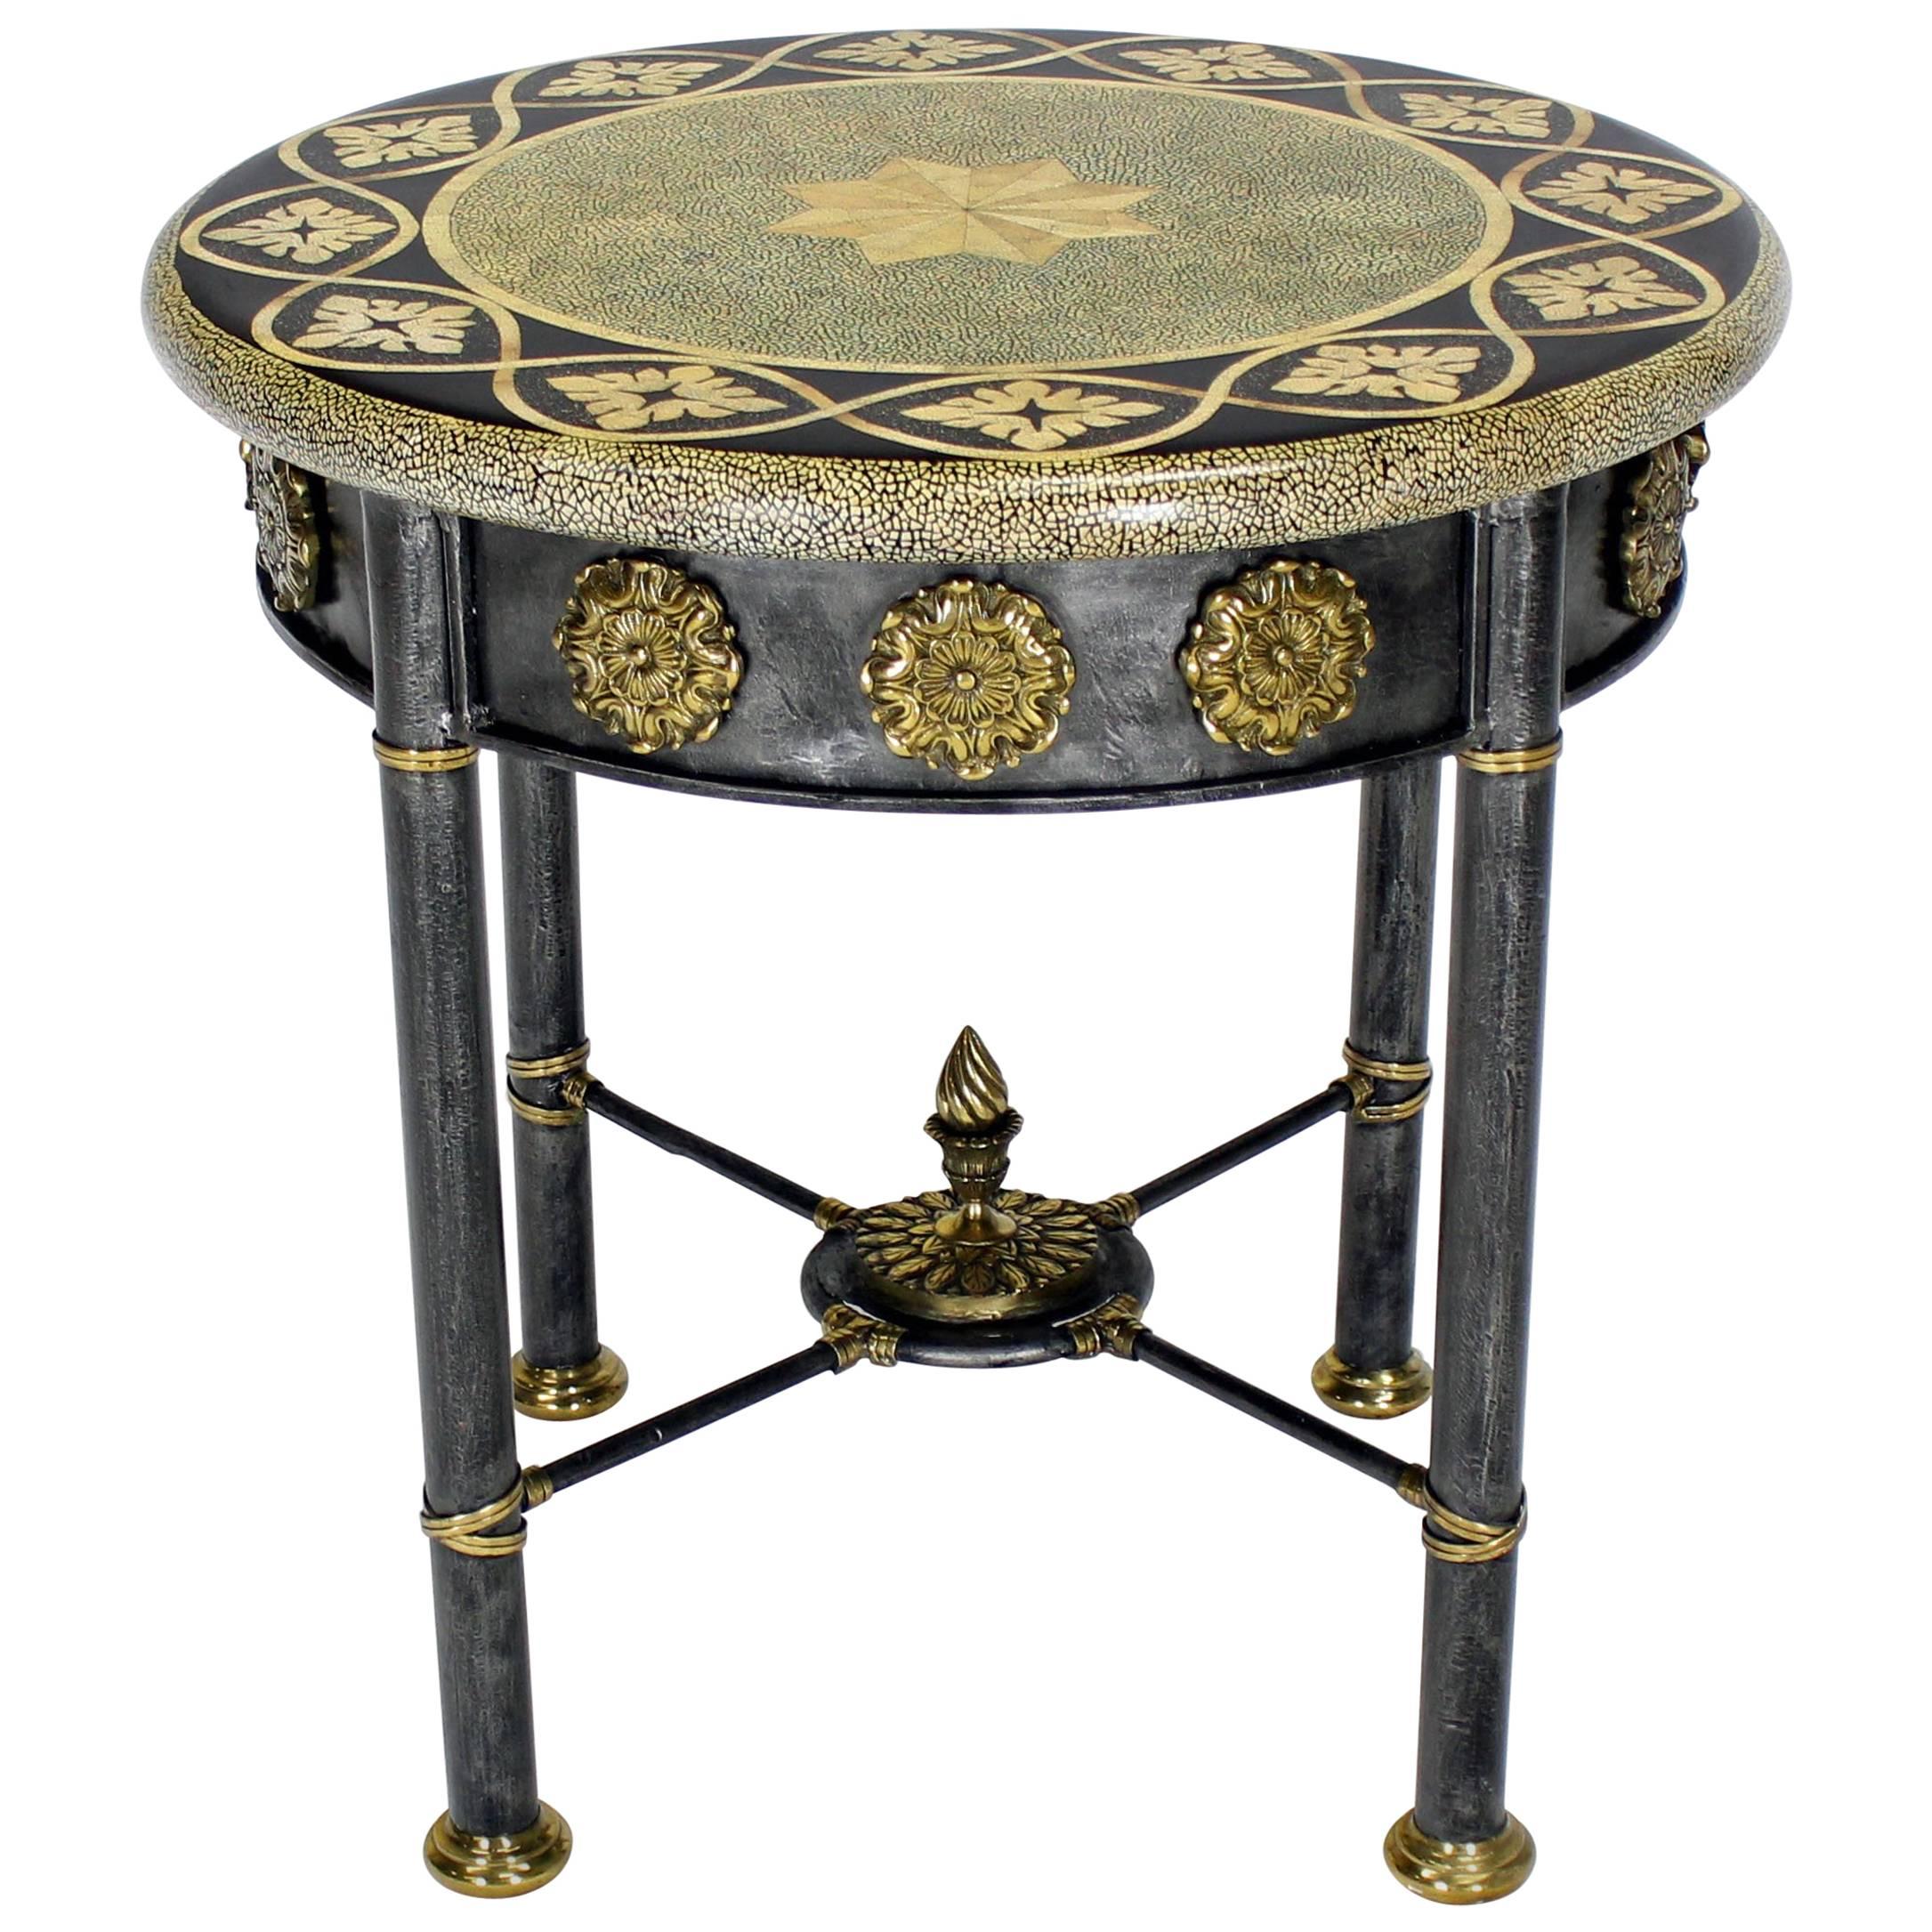 Runder runder Gueridon-Tisch mit Kunsteimuscheldekor aus Bronze und Goldbronze, dekoriert